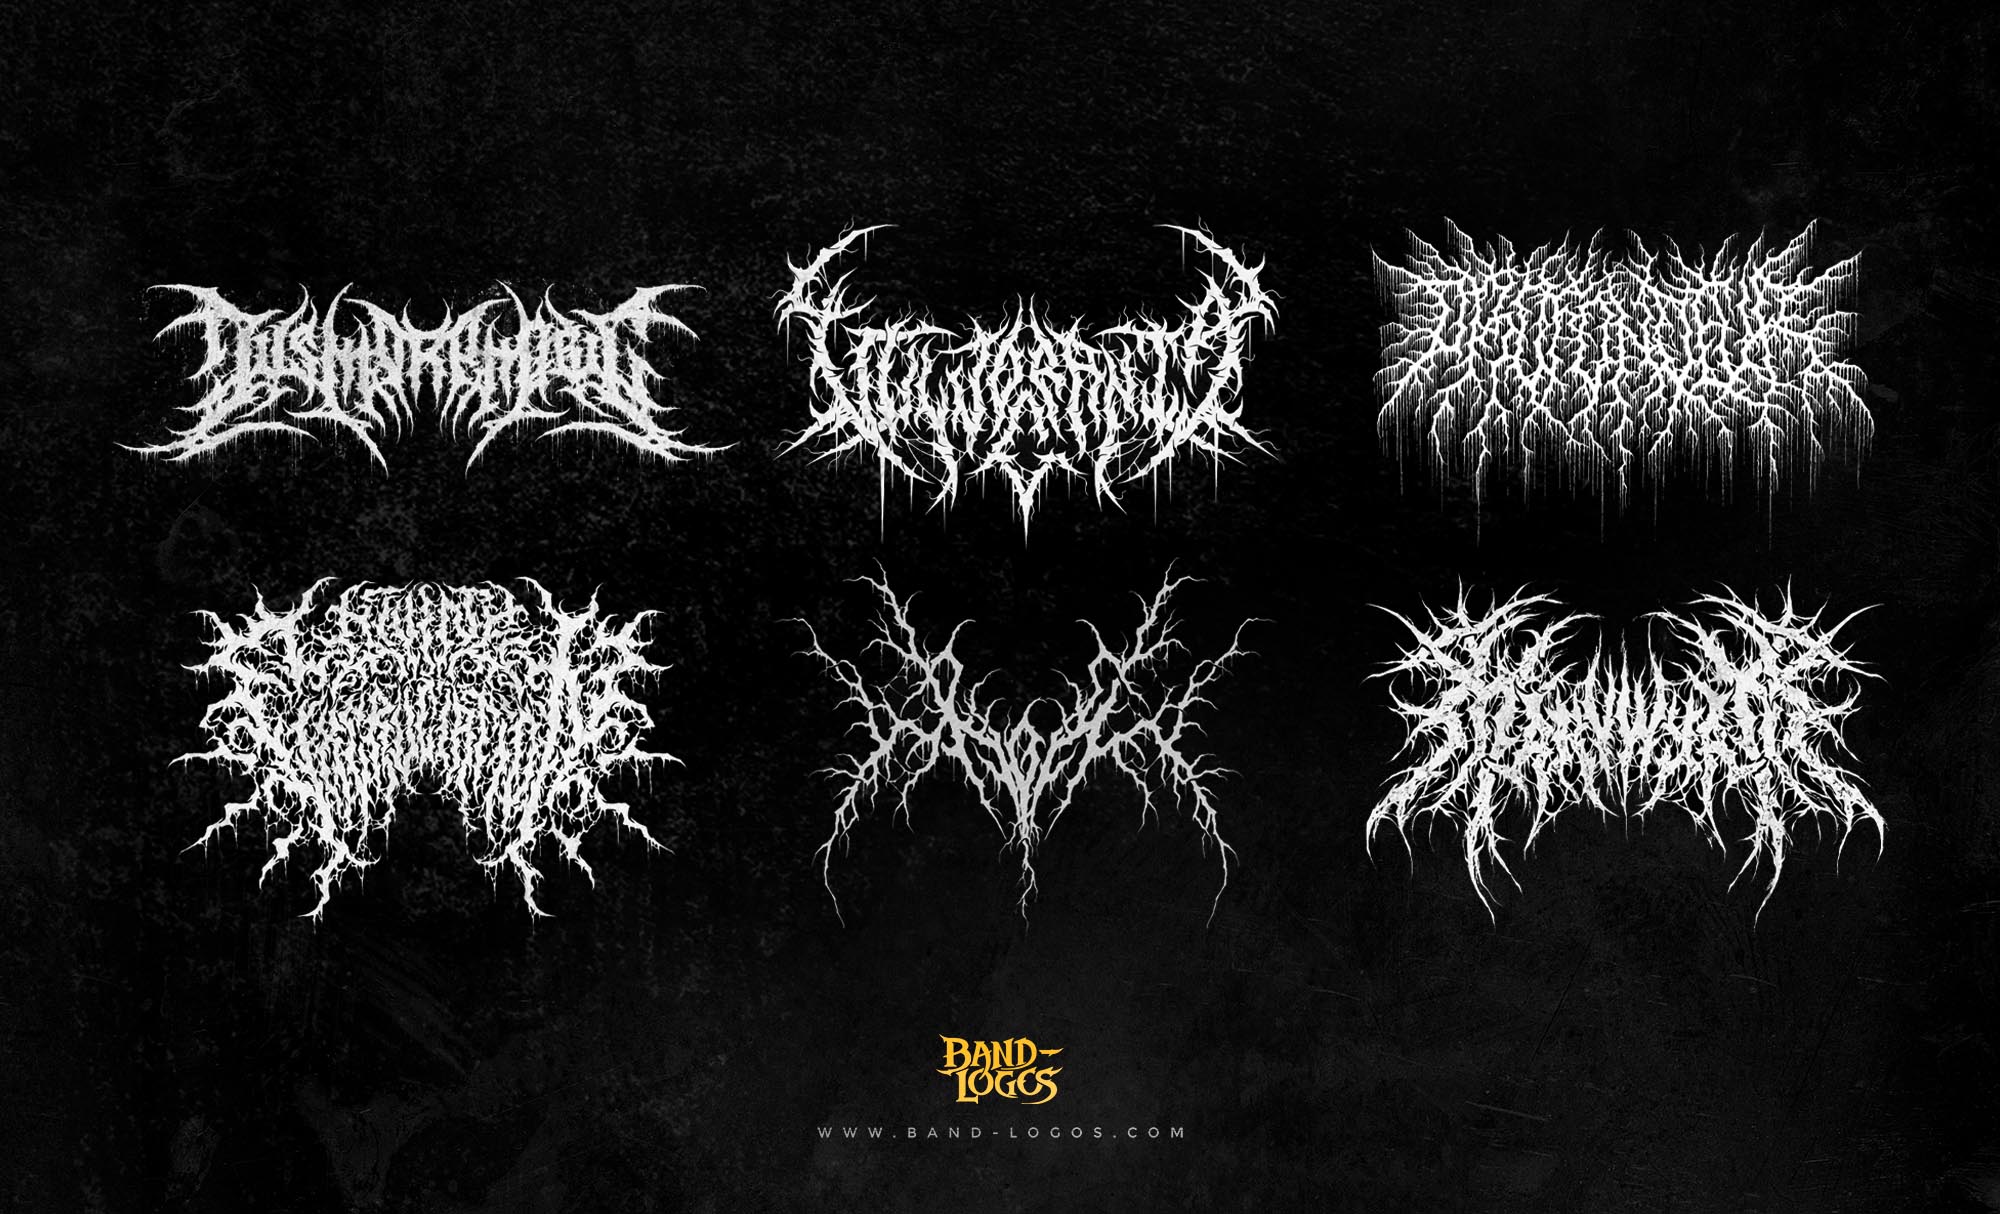 black metal logo